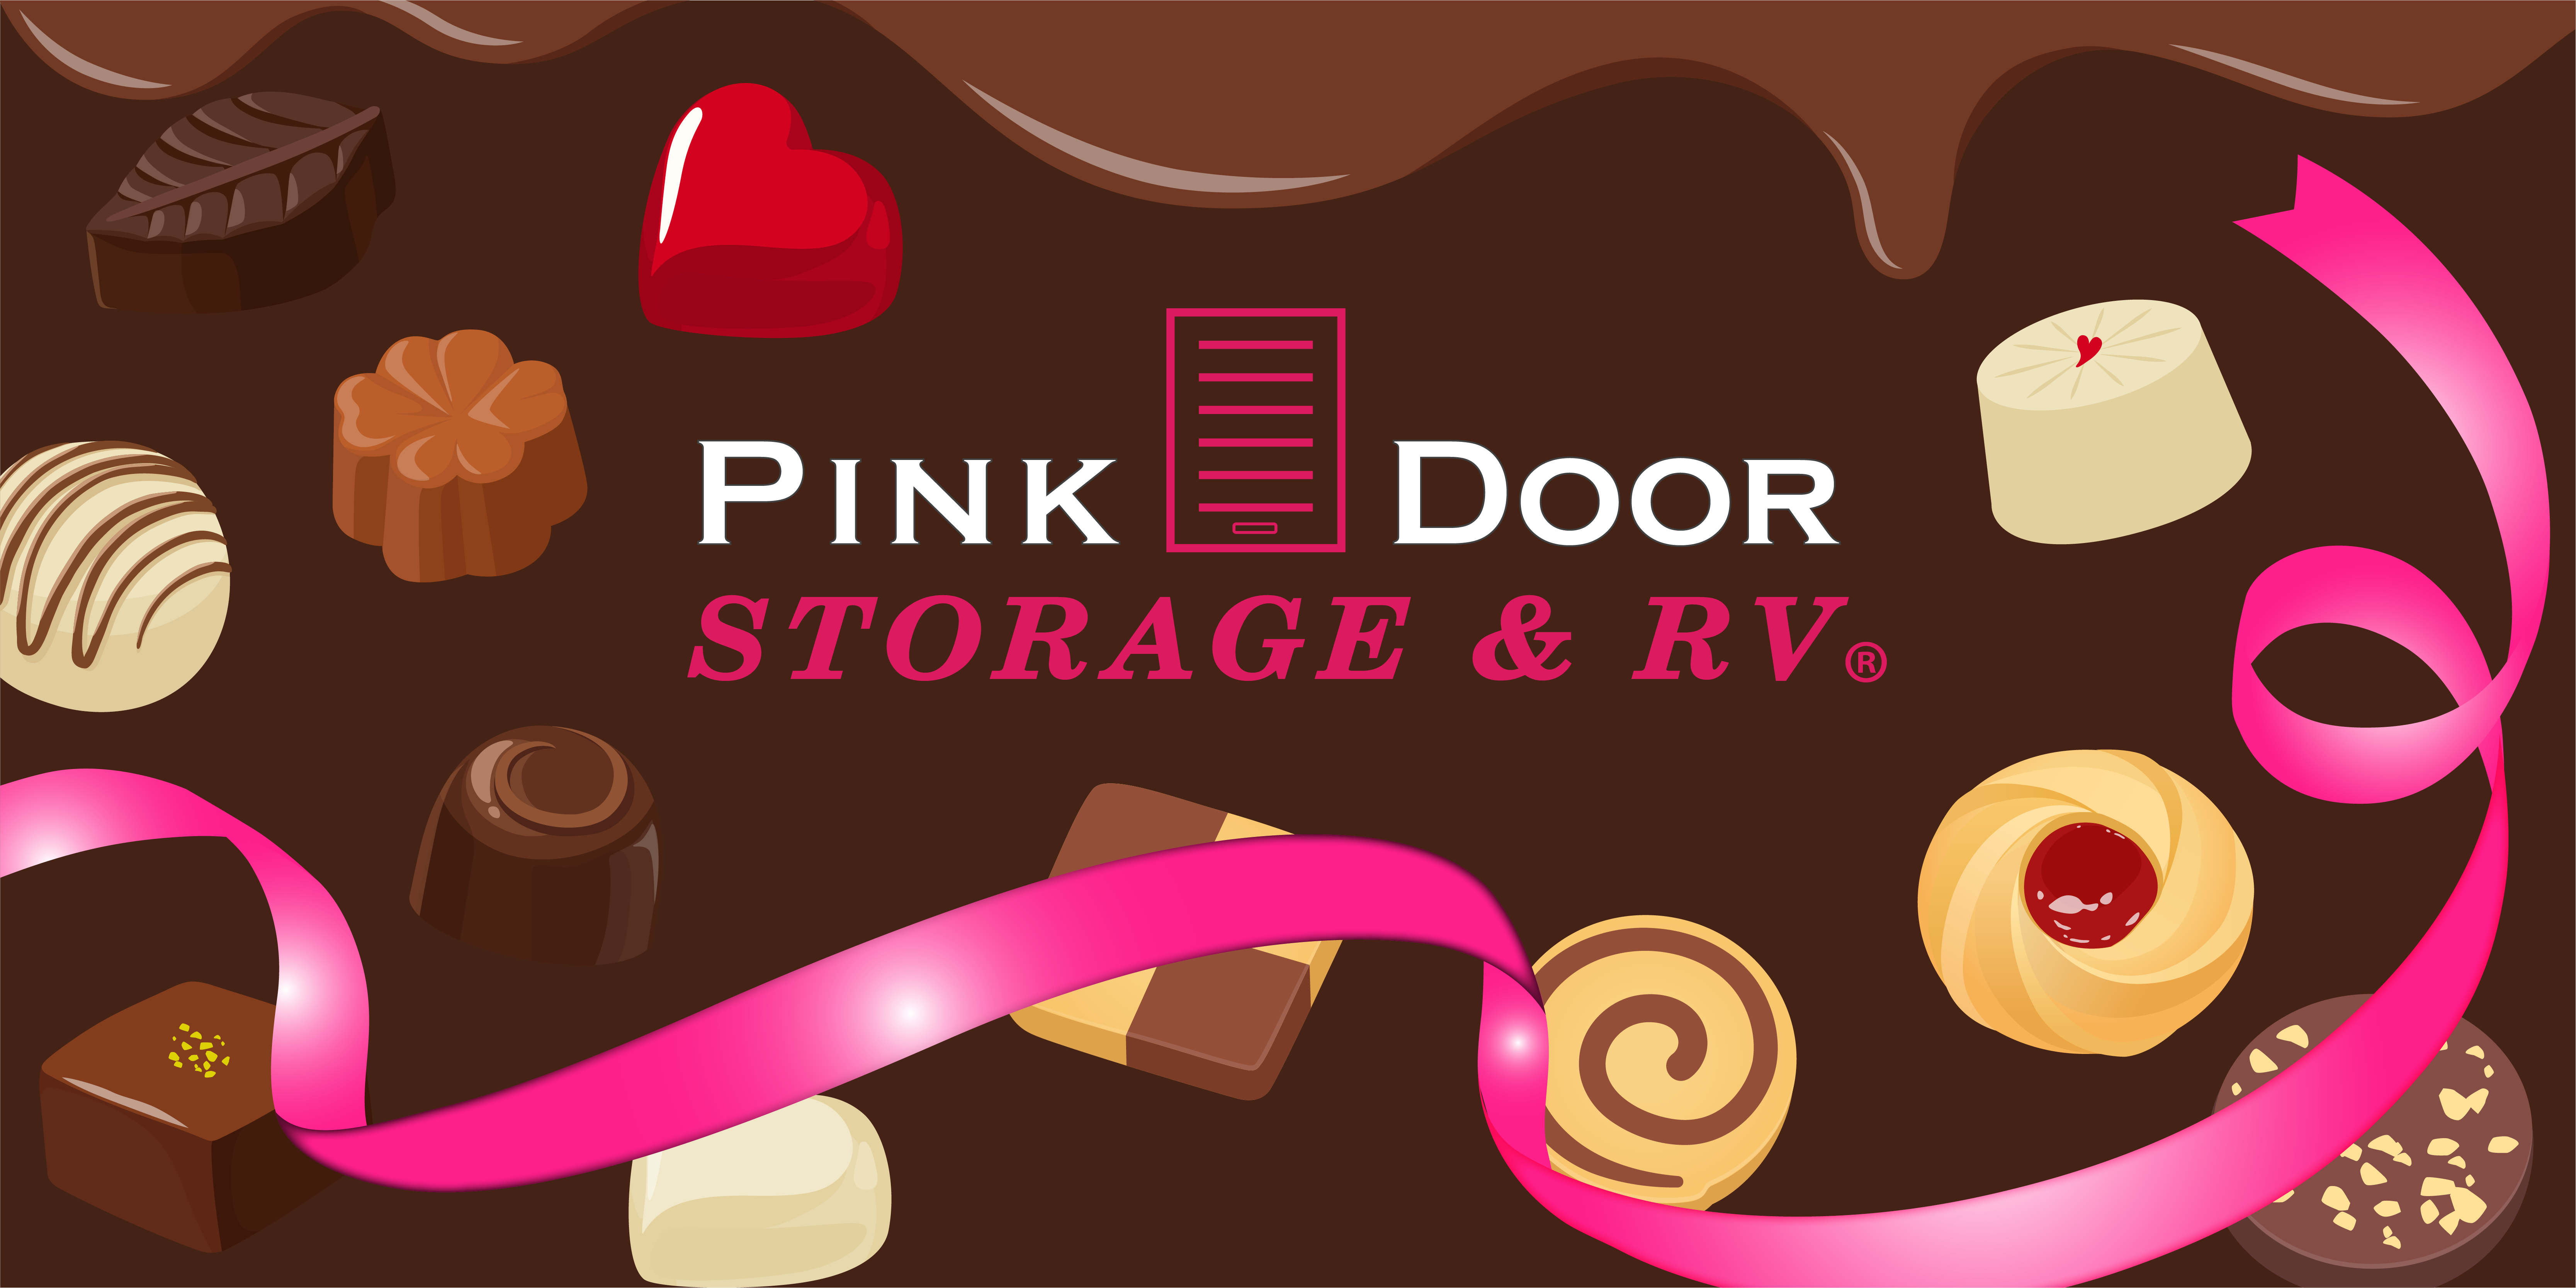 Pink Door Storage & RV Valentine's Day